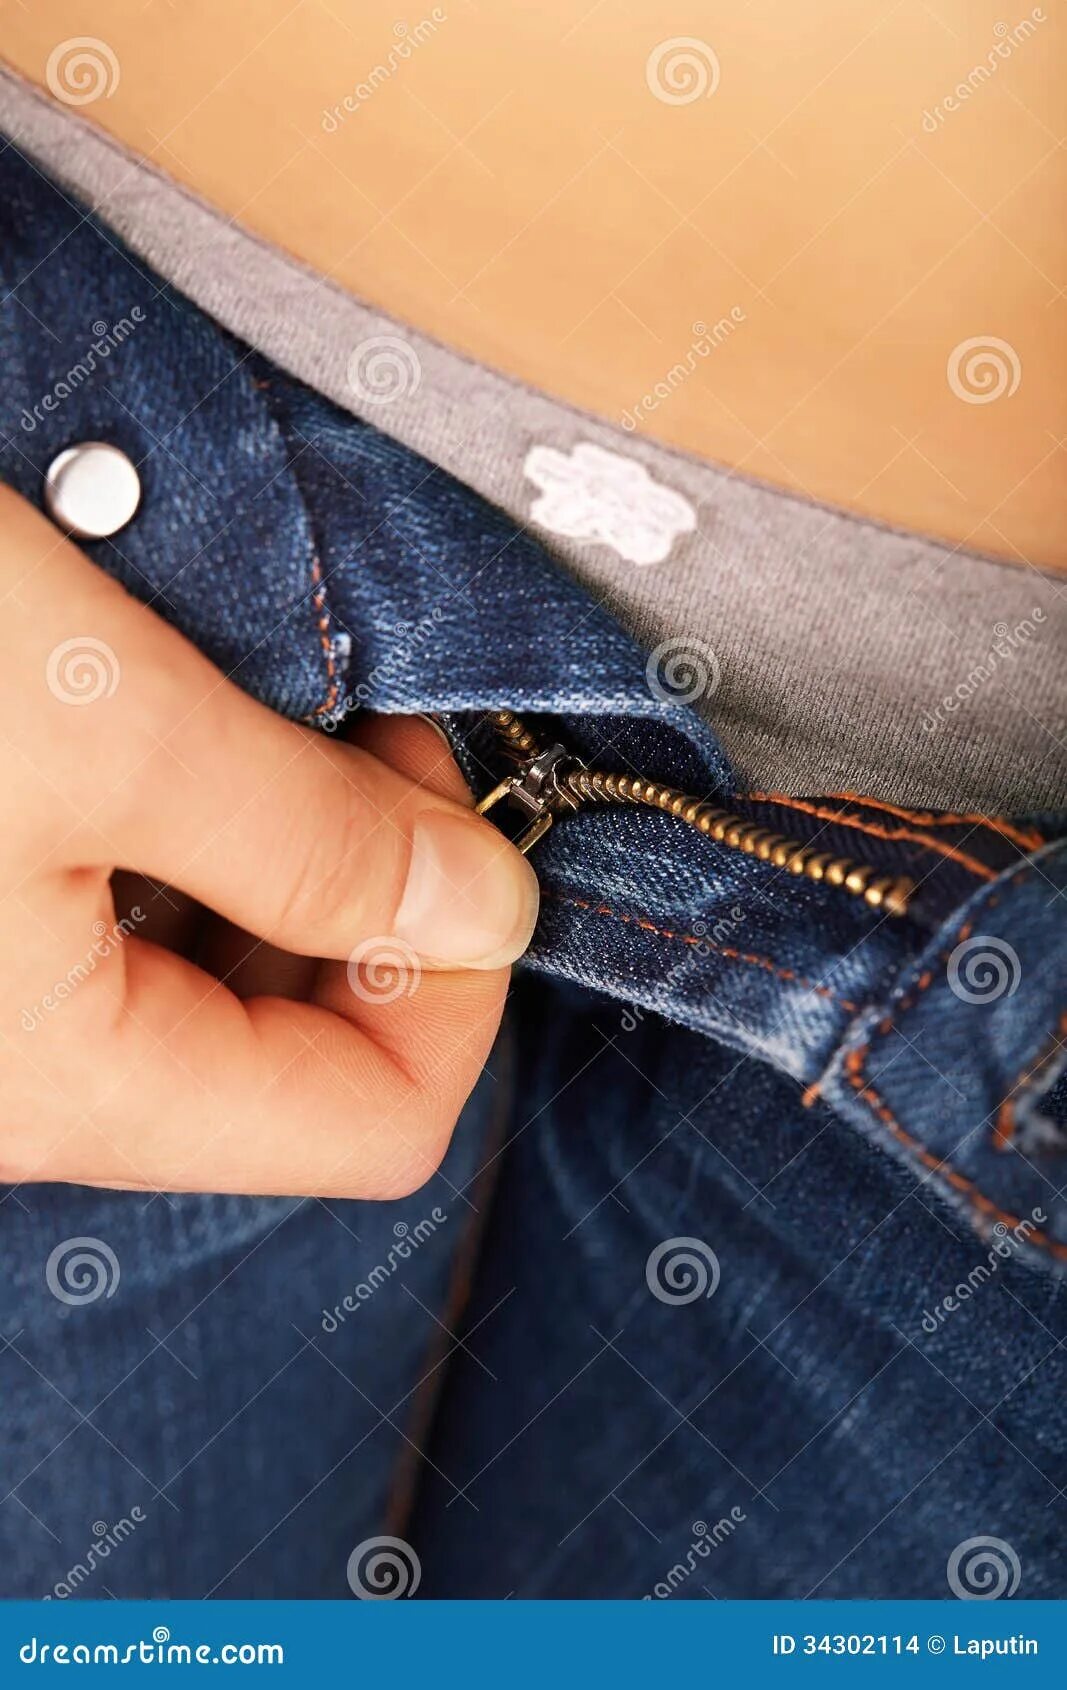 Расстегивает джинсы. Девушки в расстегнутых джинсах. Девушка застегивает джинсы. Расстегнула джинсы на пуговицах.